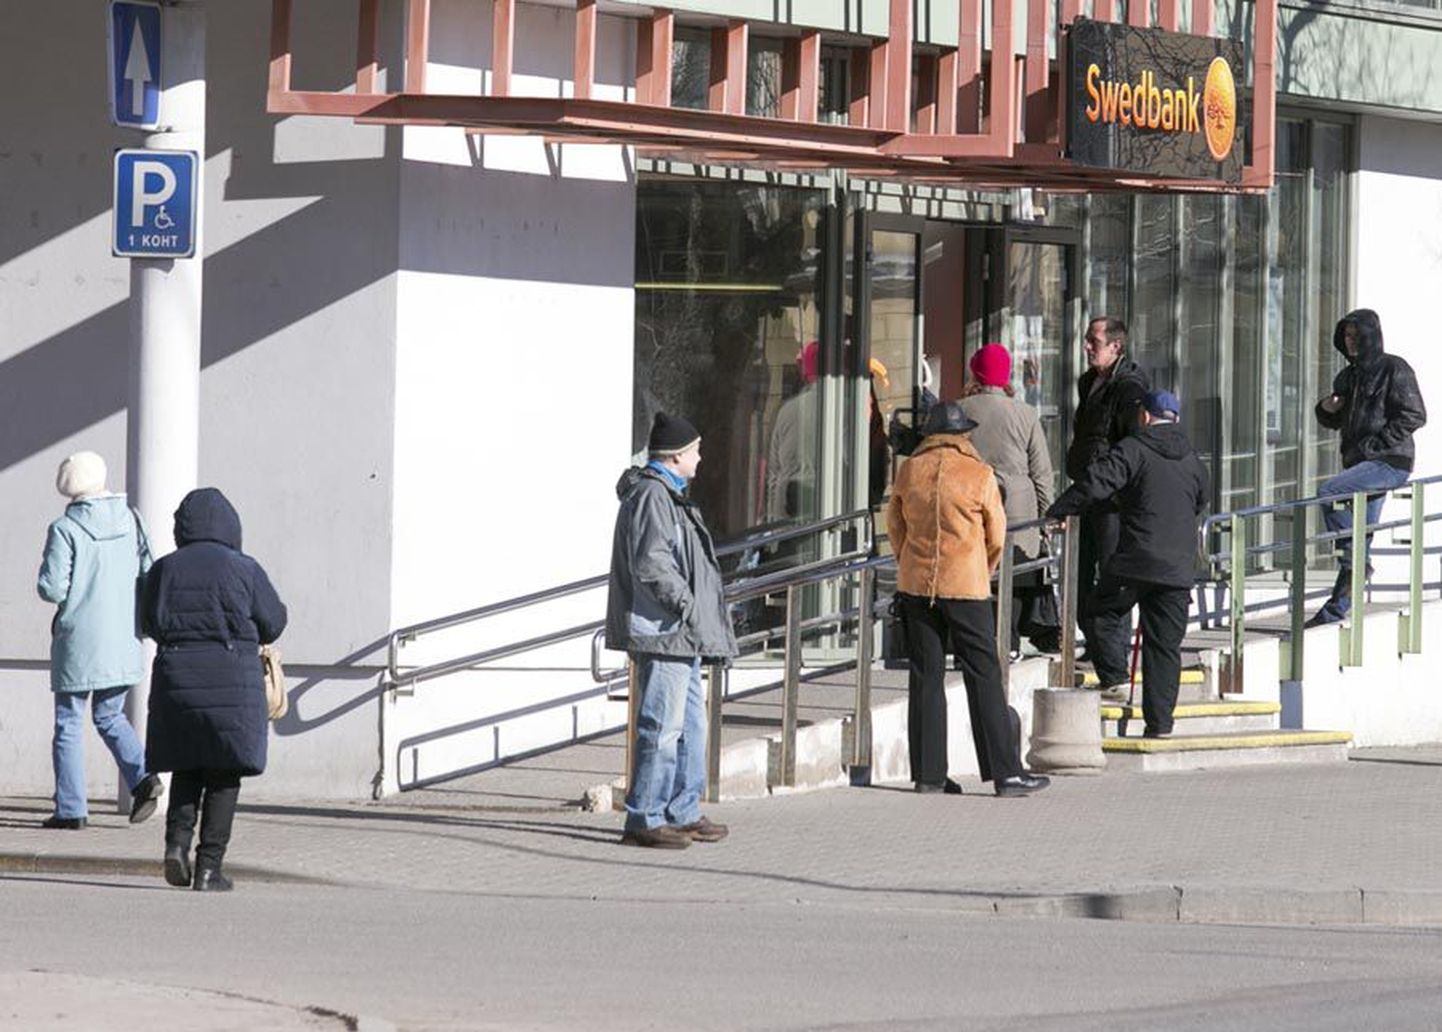 Eile kell 10 Viljandi Swedbanki kontori rahaautomaatide juures pensionipäevale omaseid pikki järjekordi ei olnud.